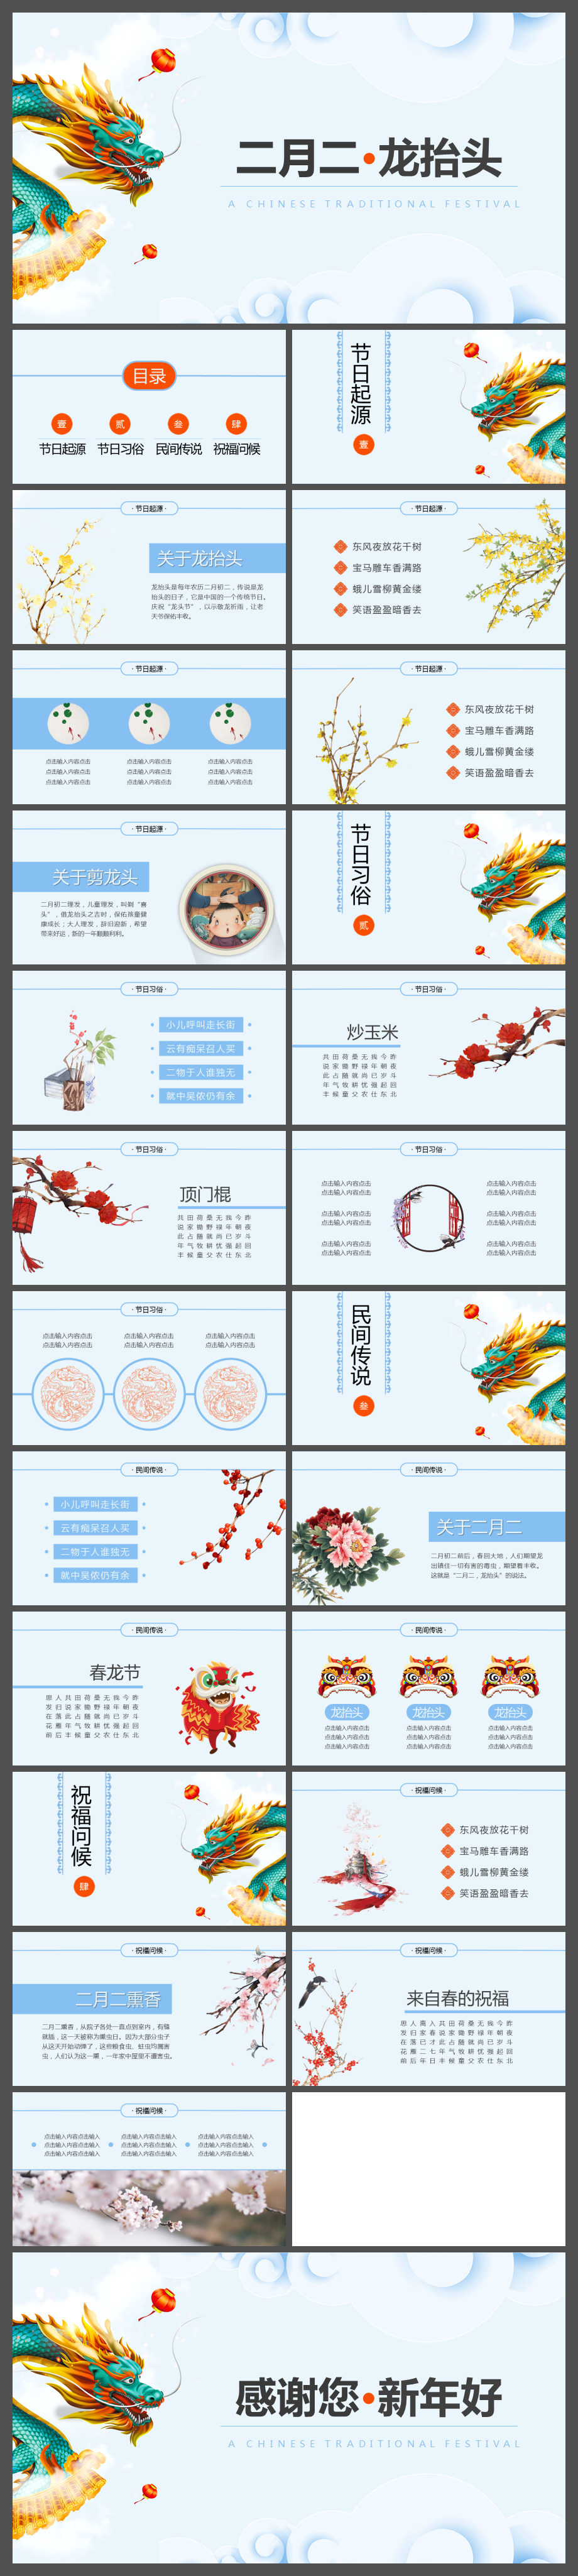 中国传统文化二月二龙抬头习俗主题PPT模板